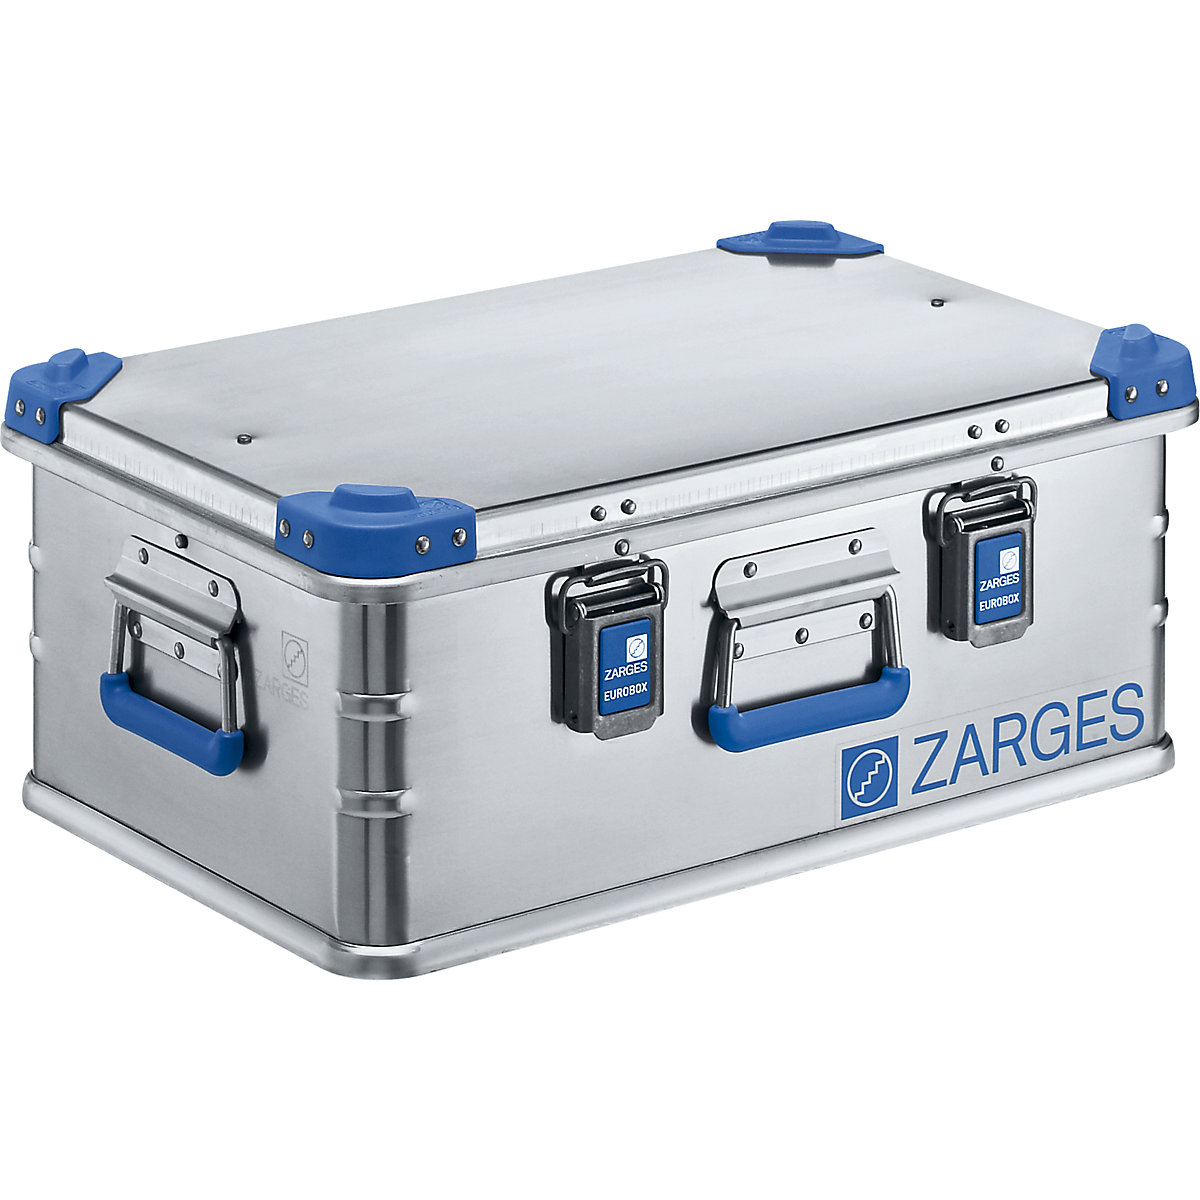 Hliníkový univerzální box – ZARGES